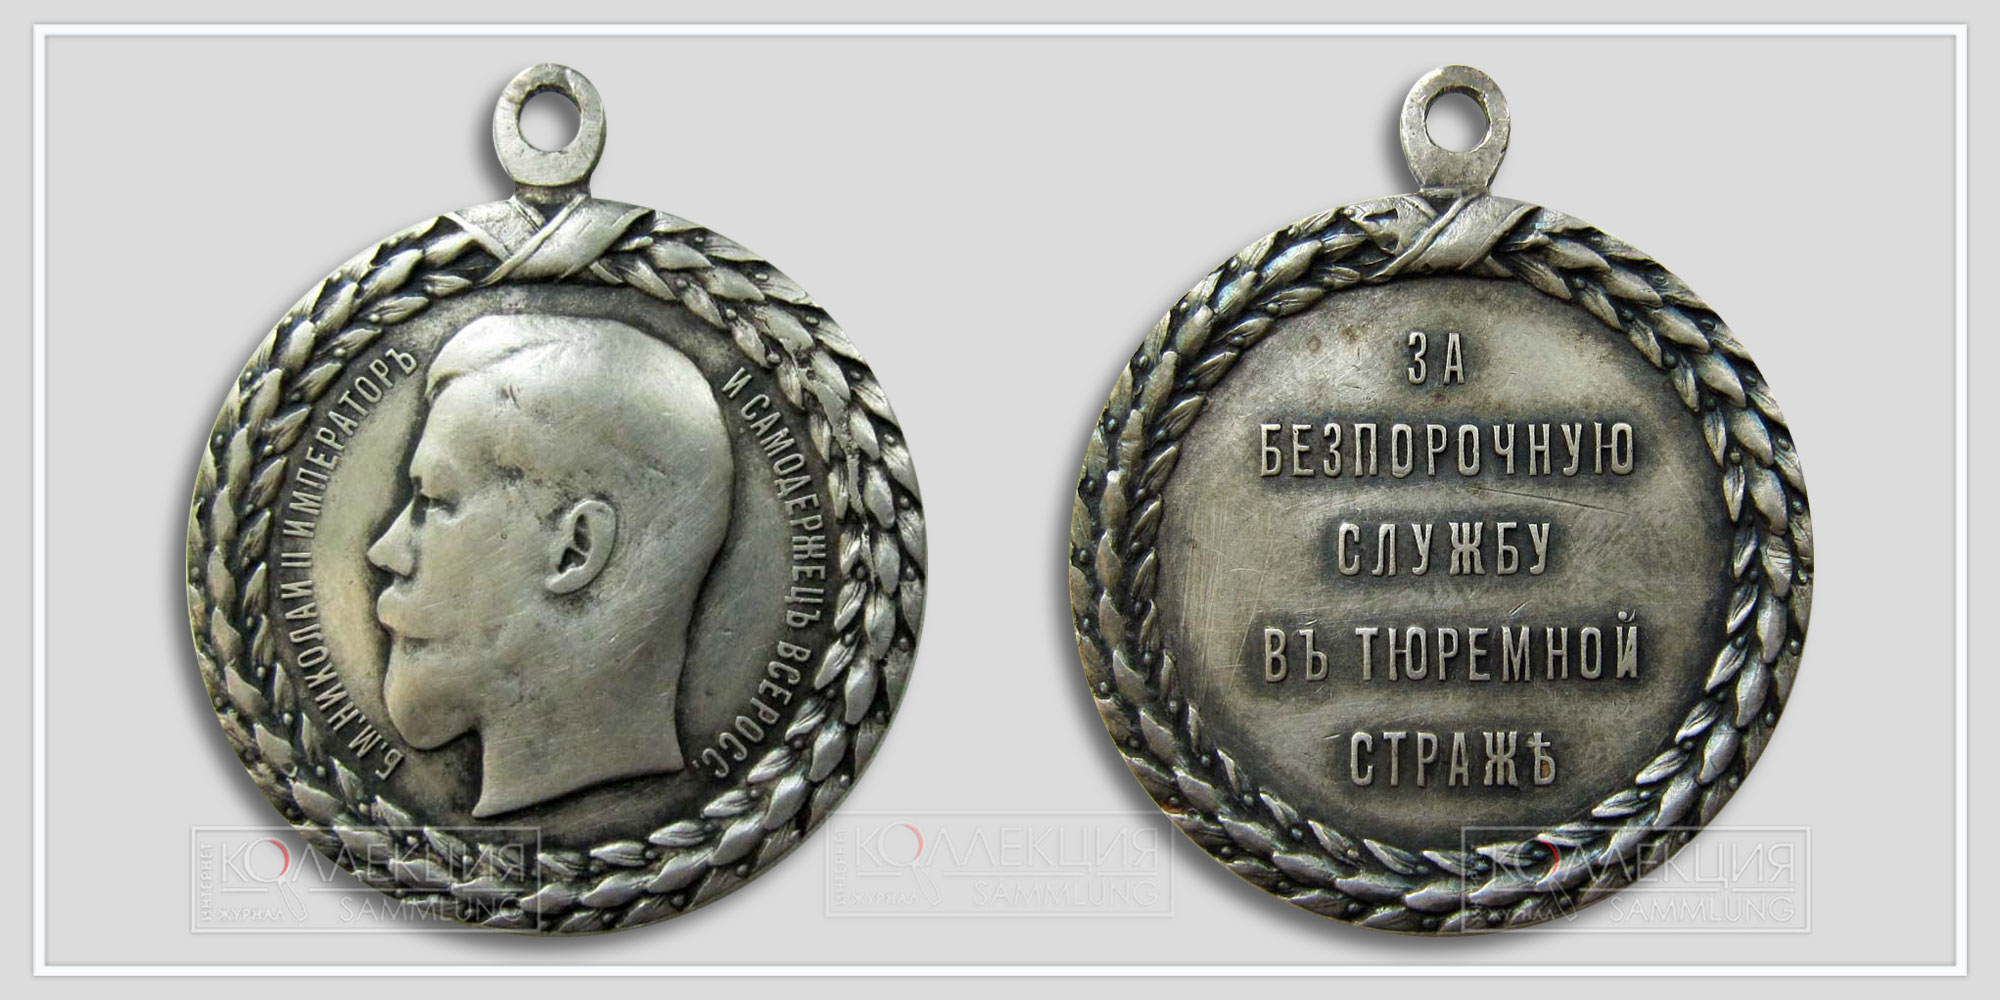 Медаль "За беспорочную службу в тюремной страже" Николай II. Серебро. Диаметр 36 мм. Вес 21.5 г (Медаль любезно предоставил Бабаев Виктор г. Кемерово)